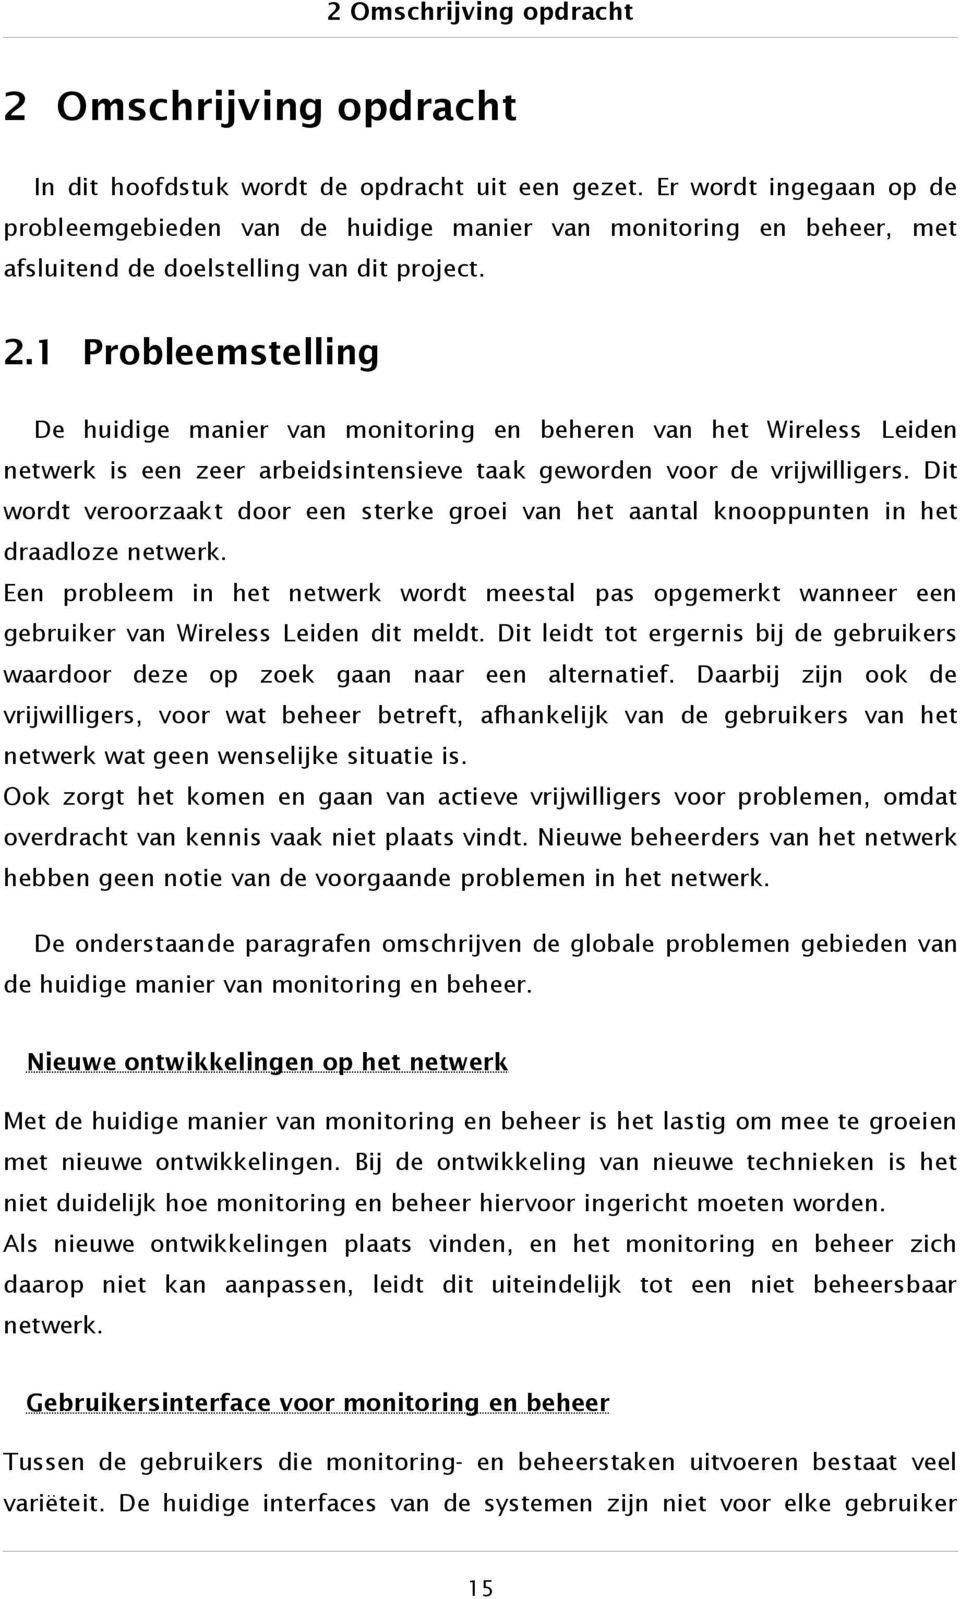 1 Probleemstelling De huidige manier van monitoring en beheren van het Wireless Leiden netwerk is een zeer arbeidsintensieve taak geworden voor de vrijwilligers.